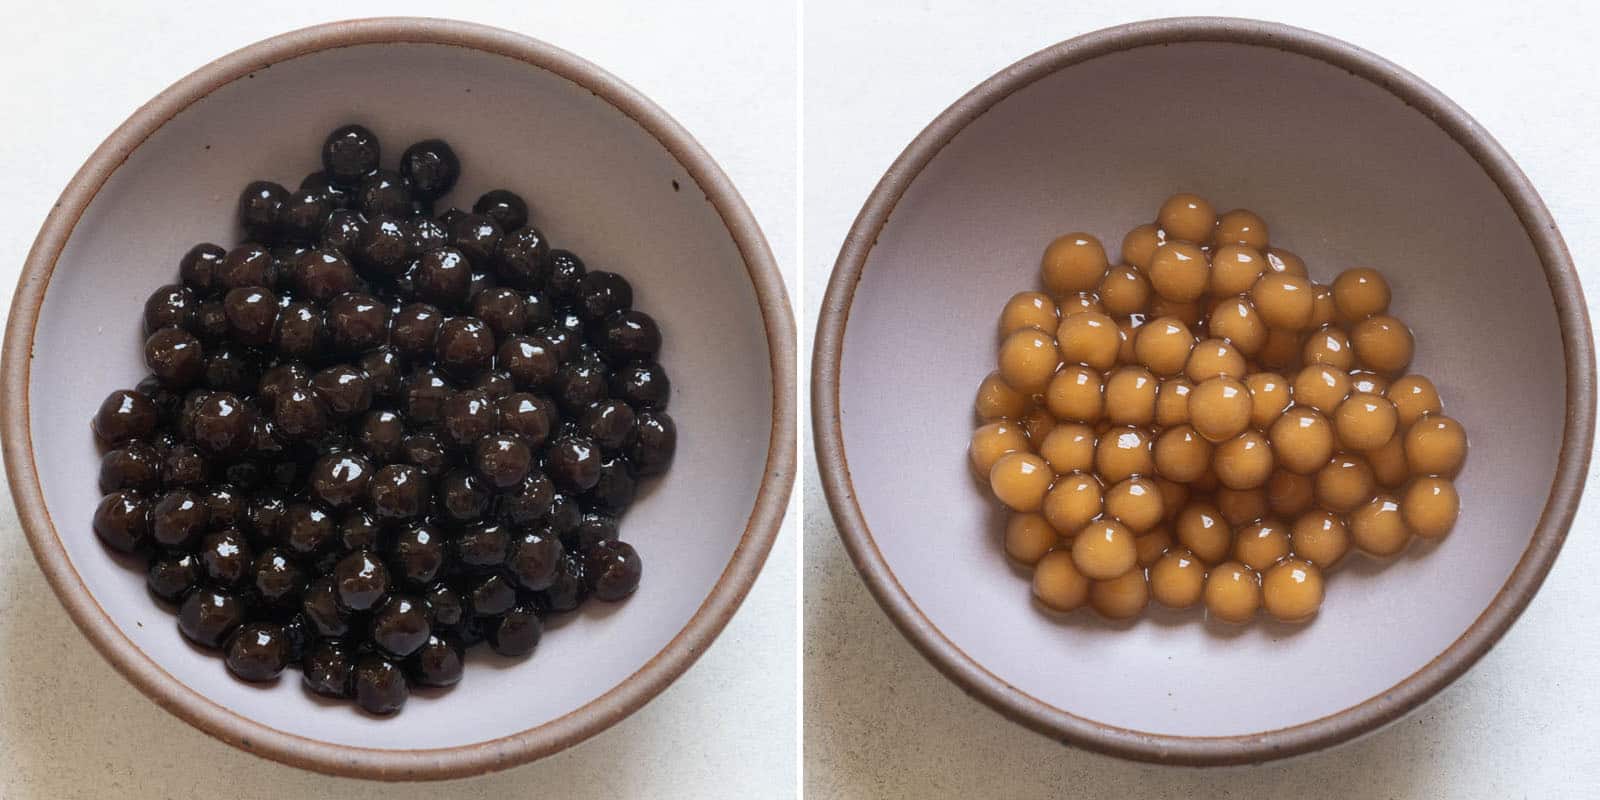 Dark brown and light brown tapioca pearls (boba pearls)